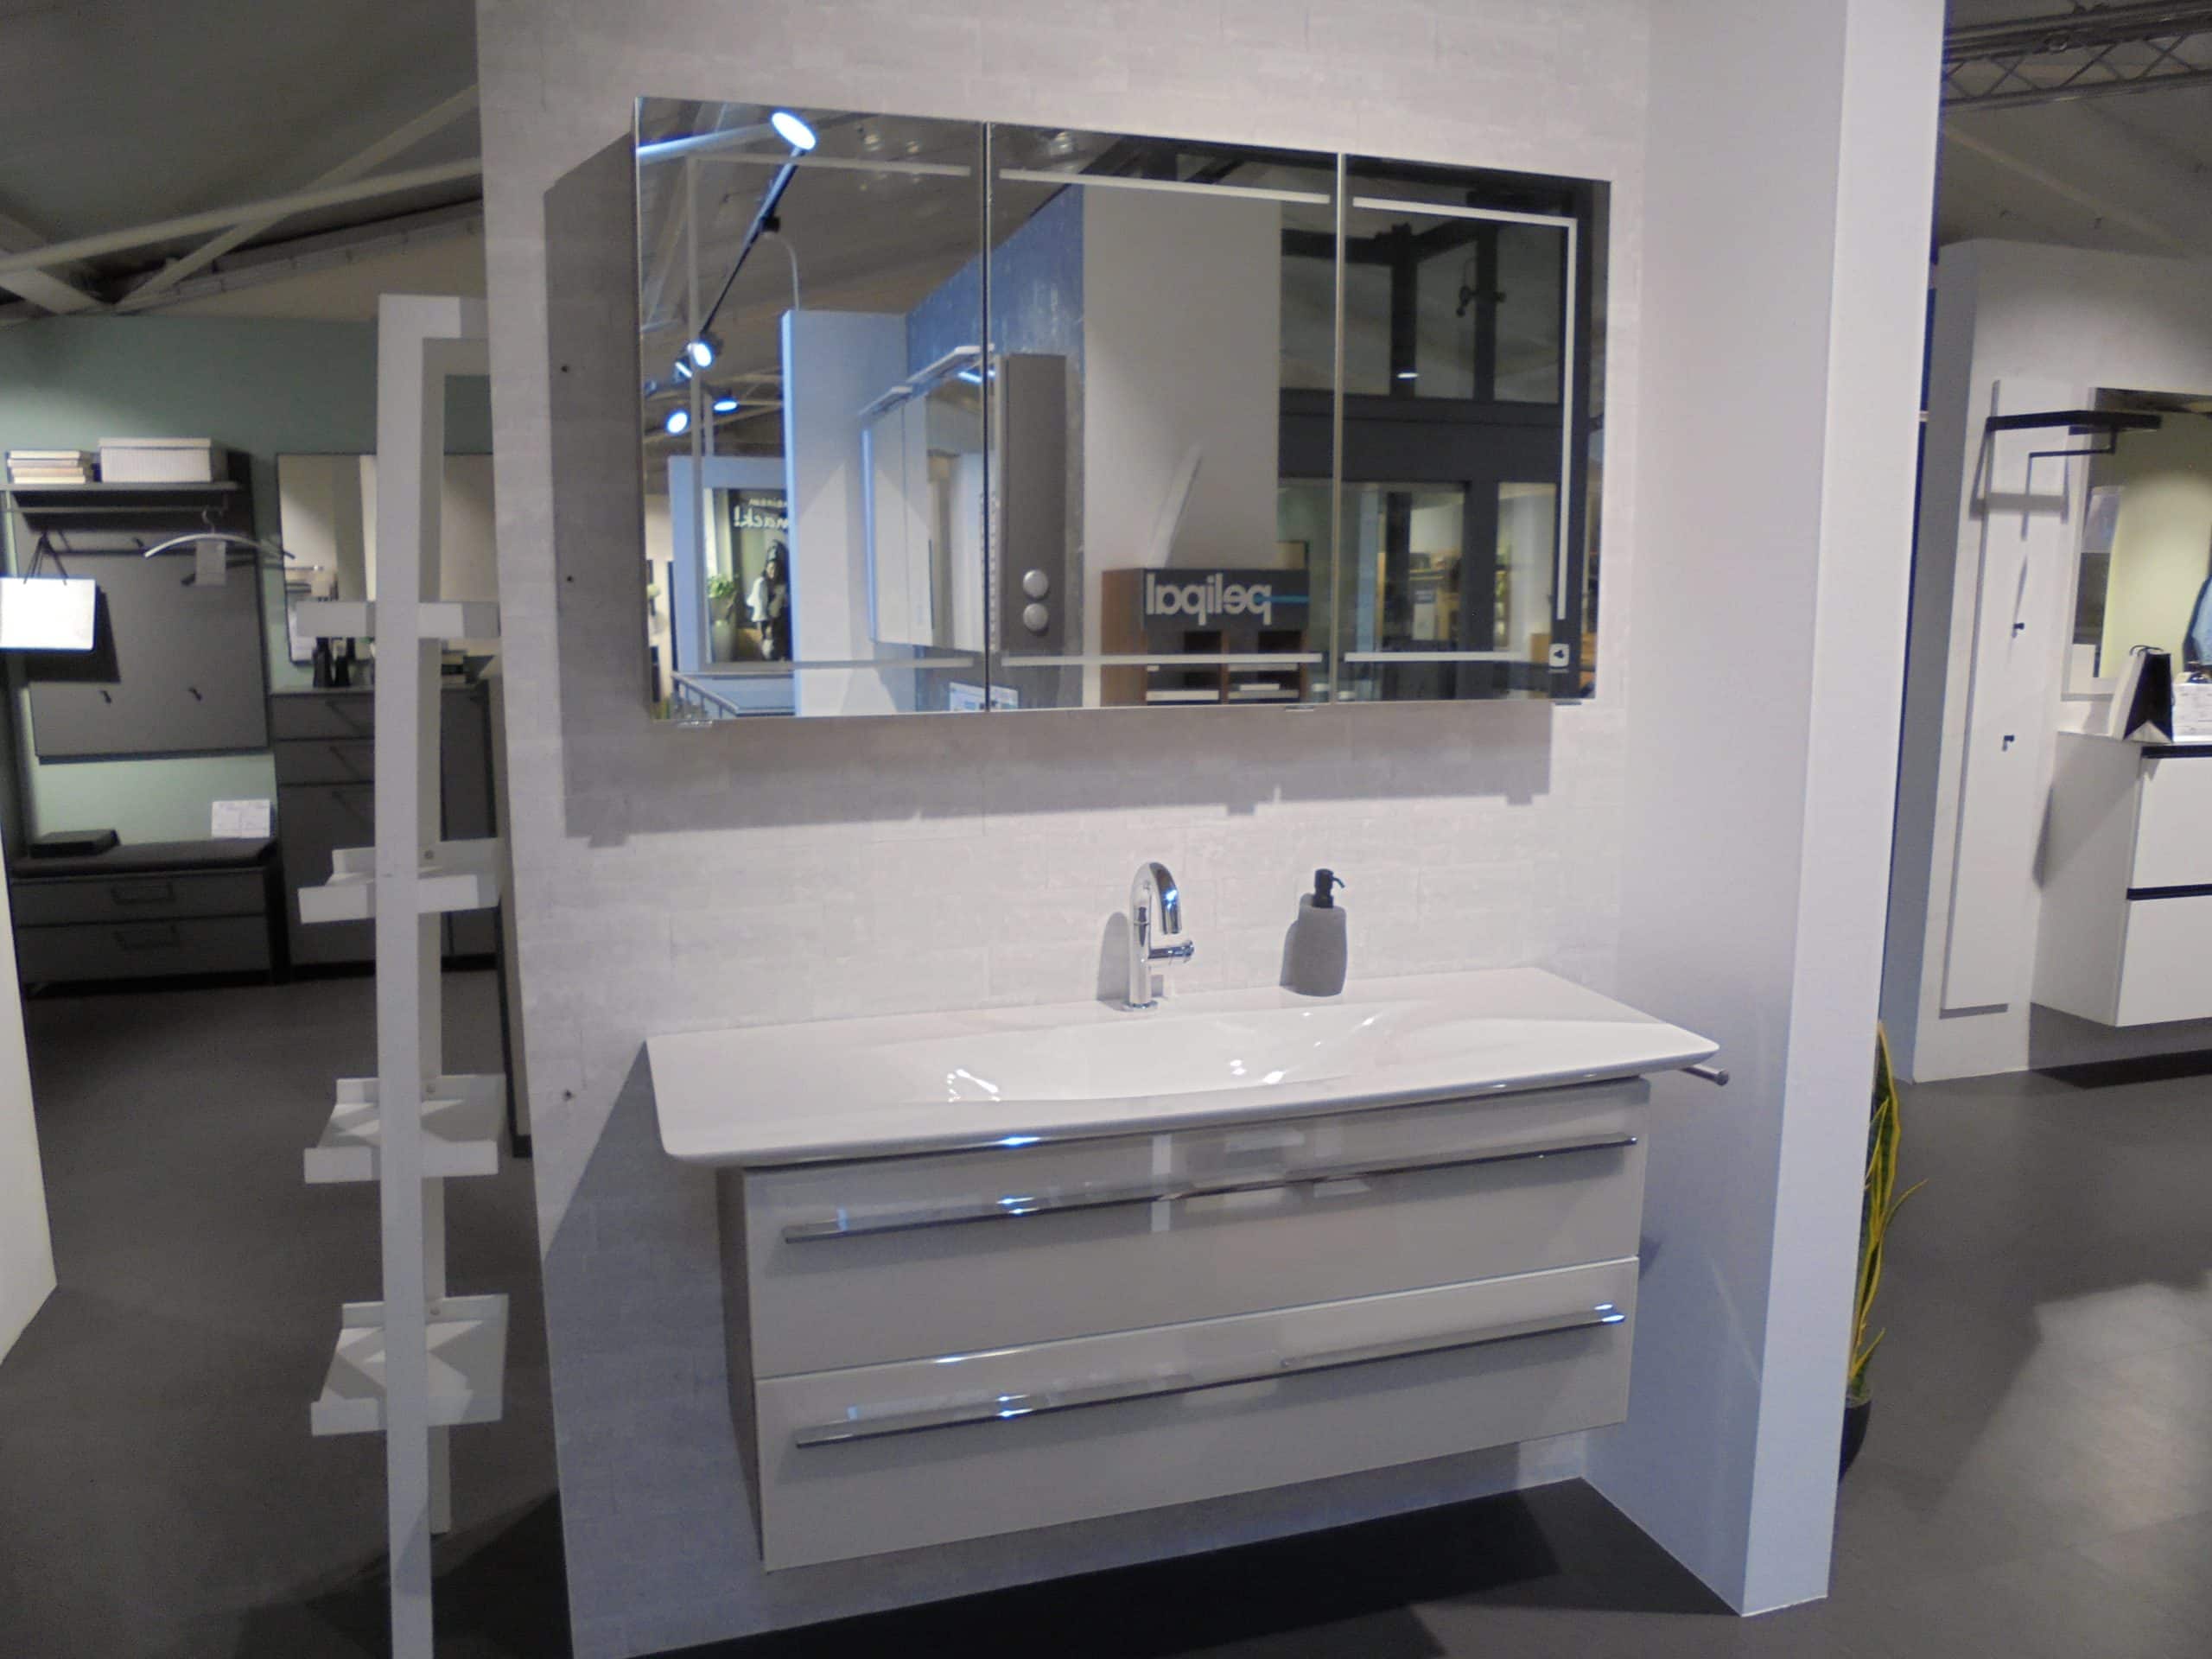 Das Möbelhaus Thiex bietet das Badprogramm Leonardo 112 mit einer Front aus Glas Perlmutt im Abverkauf an. Das Set beinhaltet einen Mineralmarmor-Waschtisch und einen Einhandmischer. Der Preis ist um 41% reduziert.